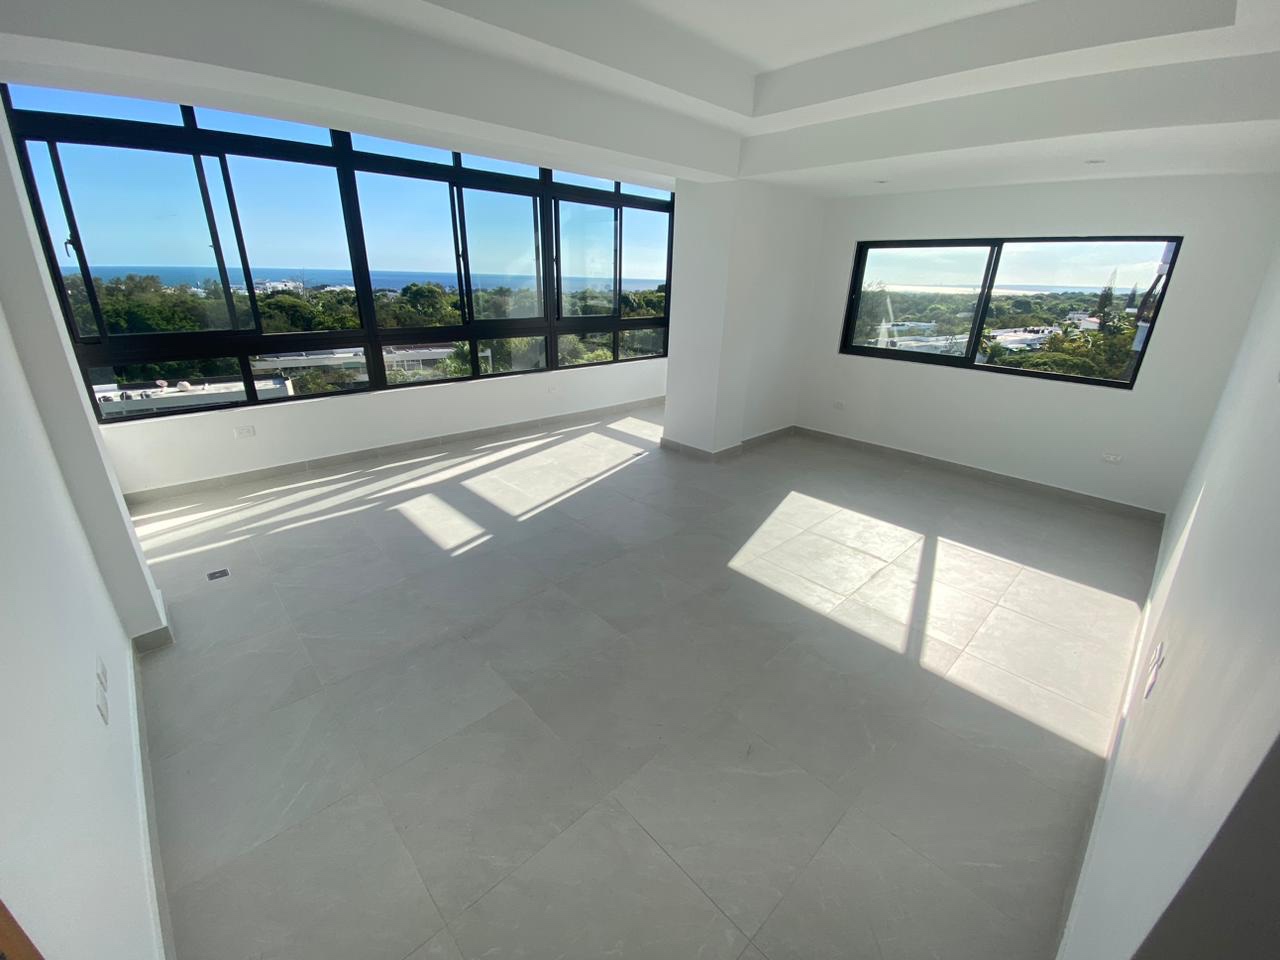 penthouses - Vendo Ph nuevo mirador sur tres hab con su baño tres parqueos terraza piso 7y8 0